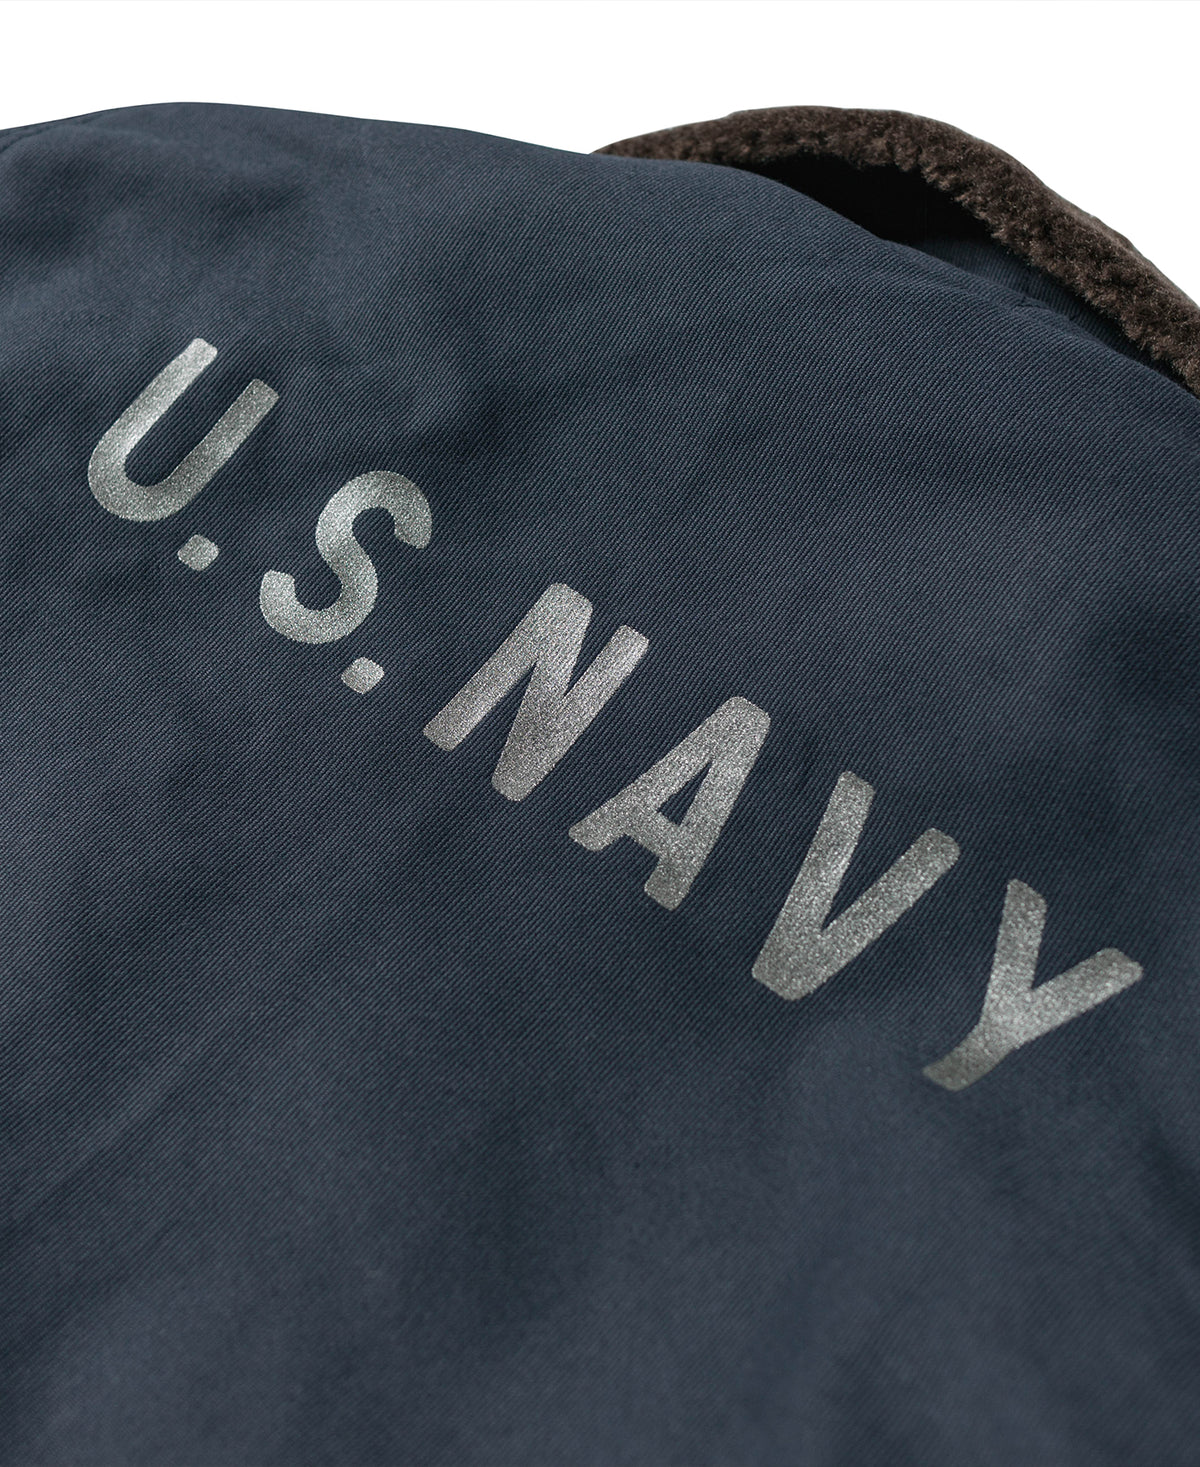 1943 US Navy 1st Type N-1 Deck Jacket - Navy Stencil